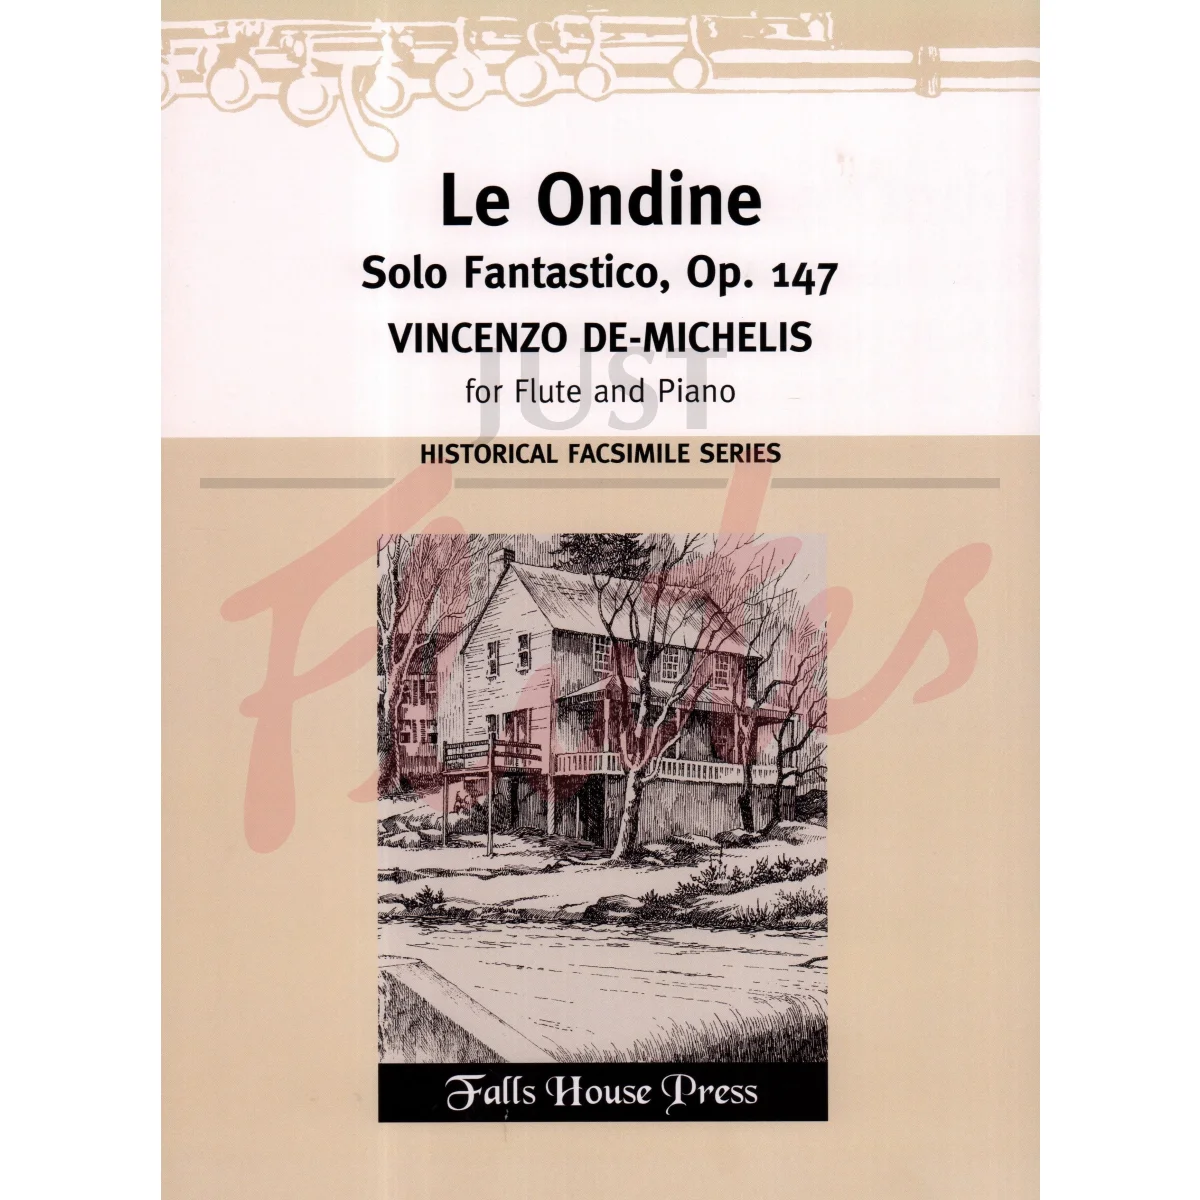 Le Ondine: Solo Fantastico for Flute and Piano